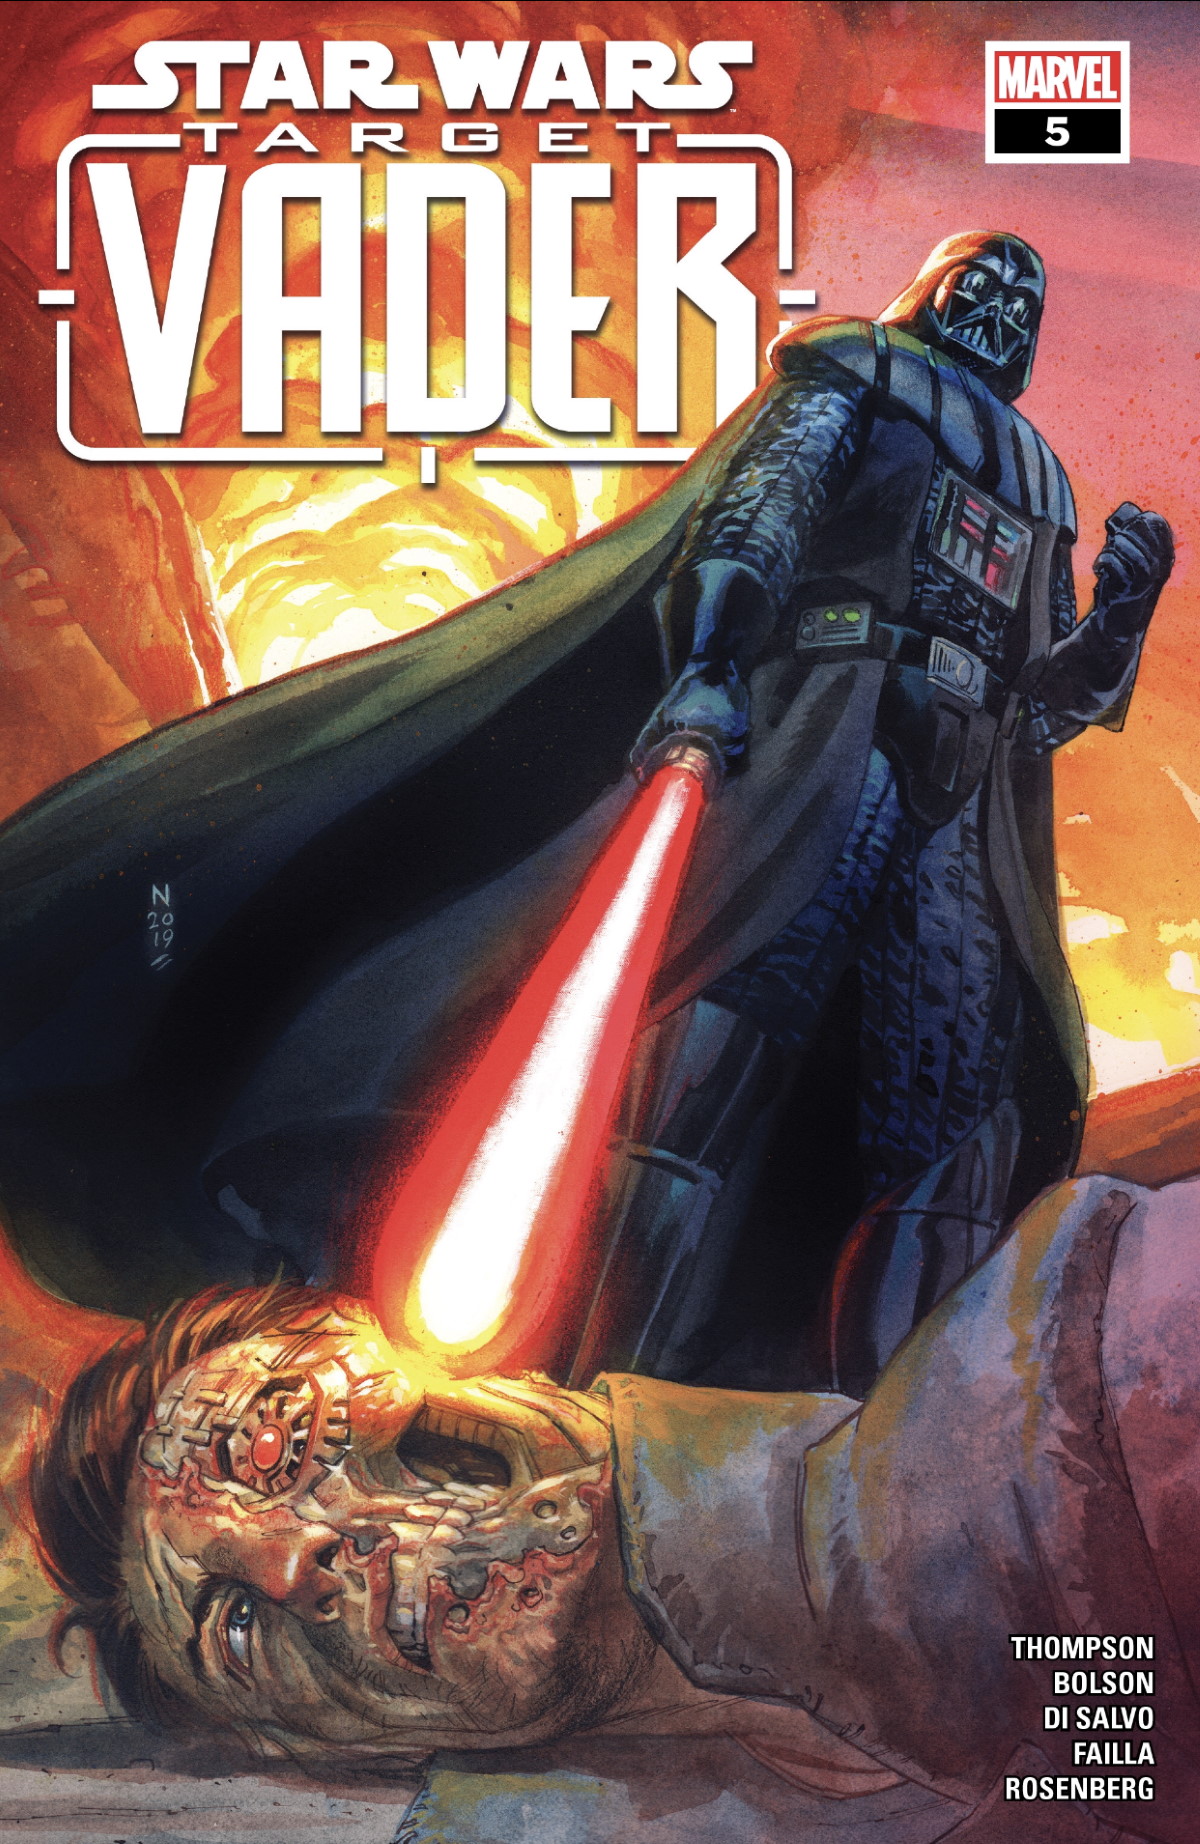 Target Vader #5 Cover - Marvel - Star Wars